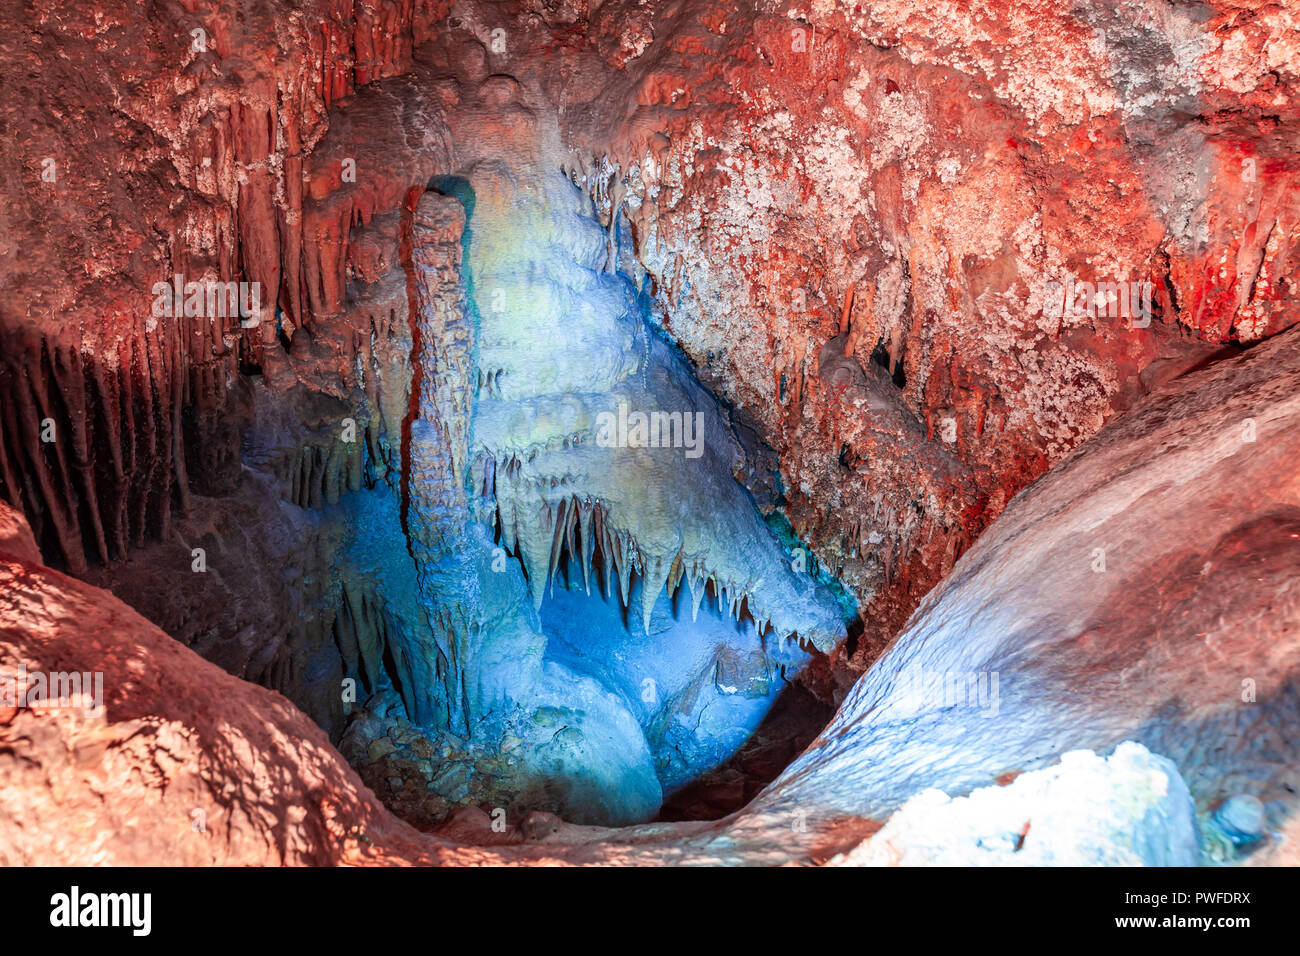 Incredibile la ganascia del coccodrillo la formazione di stalattiti in una grotta di pietra calcarea in Australia Foto Stock